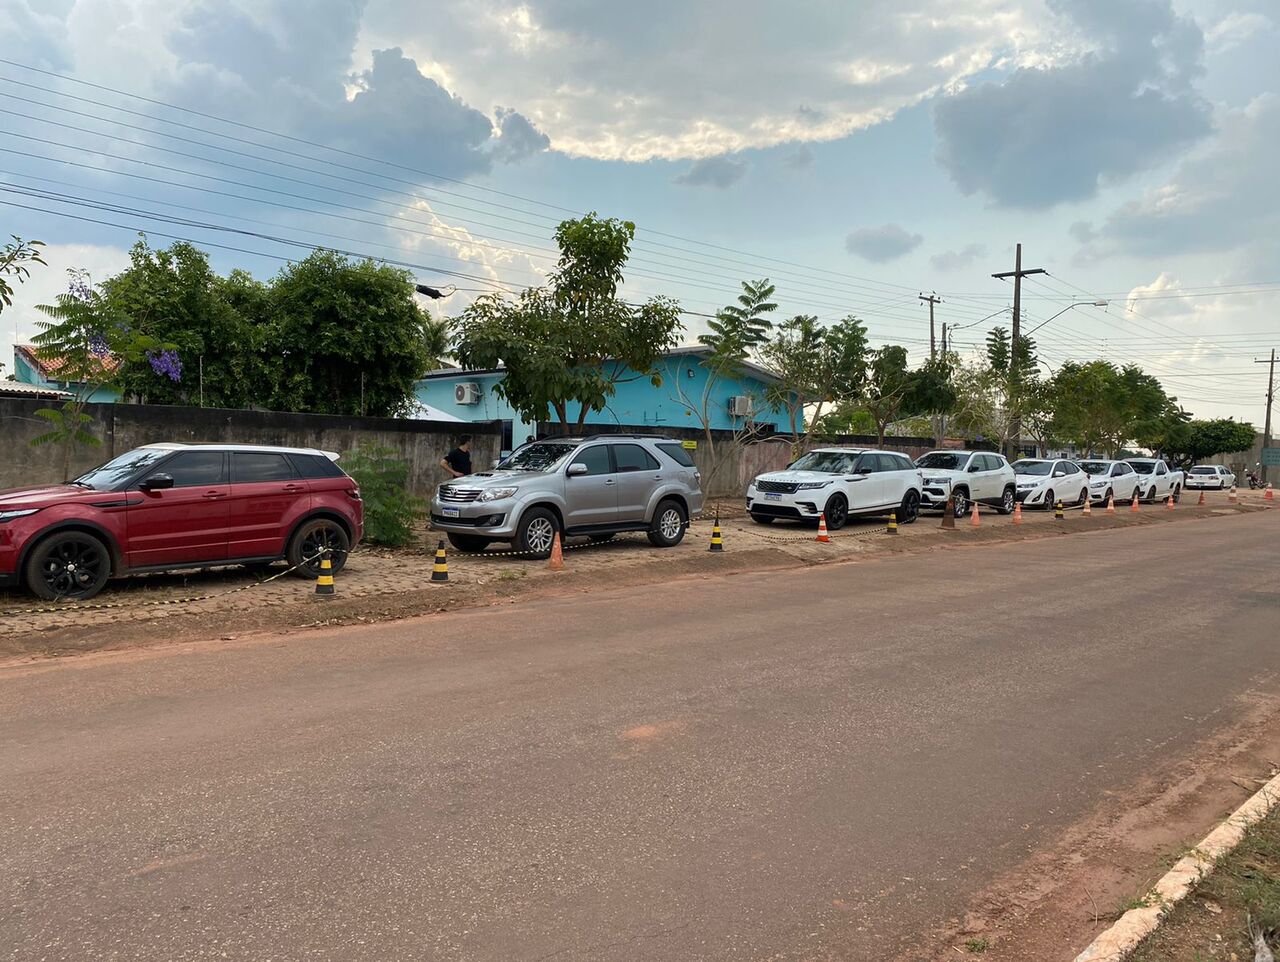 Fotos: operação da PF em Rondônia apreende vários carros de luxo